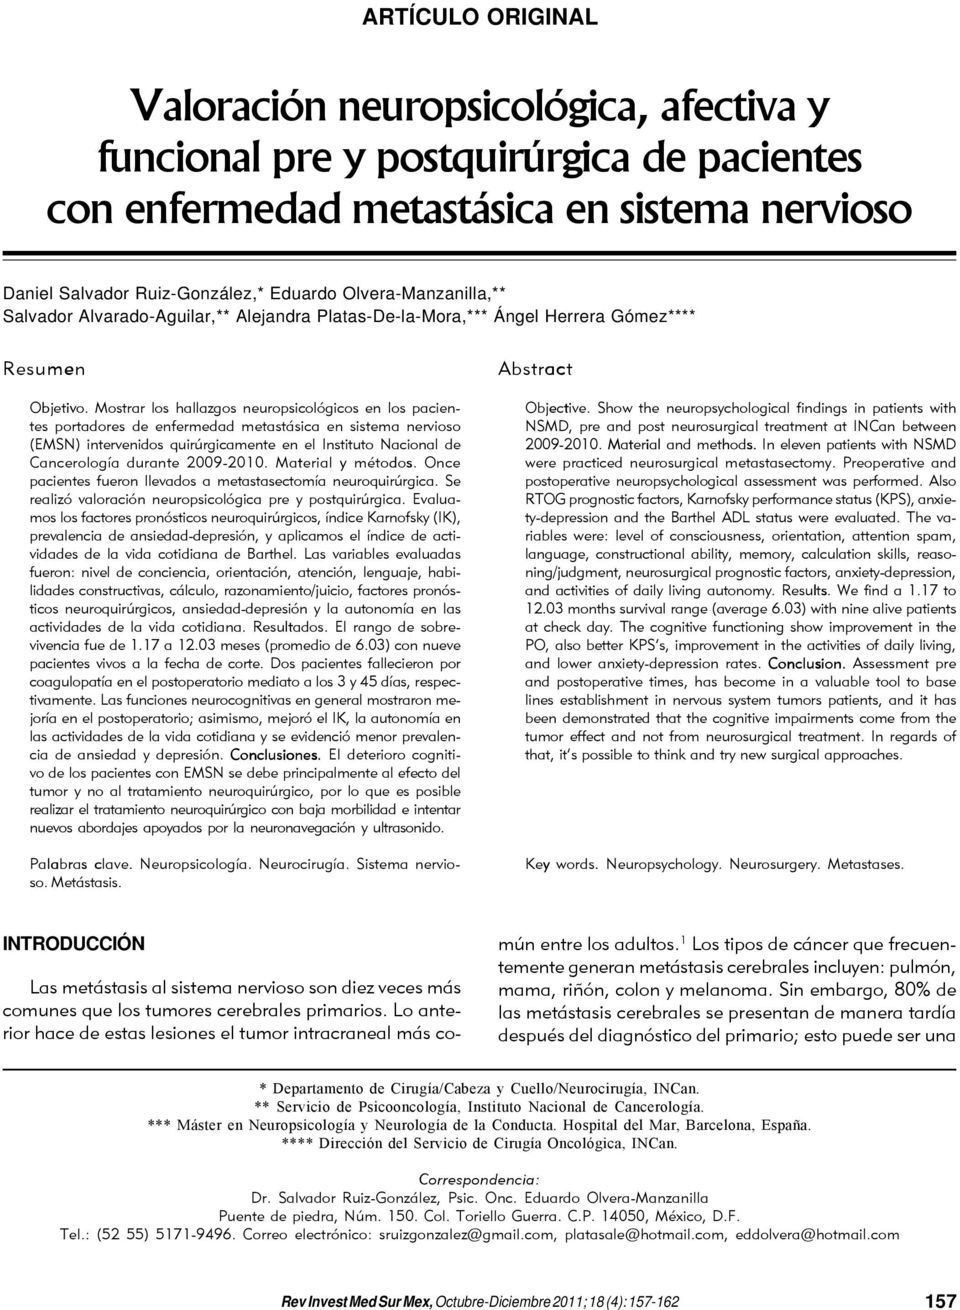 Mostrar los hallazgos neuropsicológicos en los pacientes portadores de enfermedad metastásica en sistema nervioso (EMSN) intervenidos quirúrgicamente en el Instituto Nacional de Cancerología durante